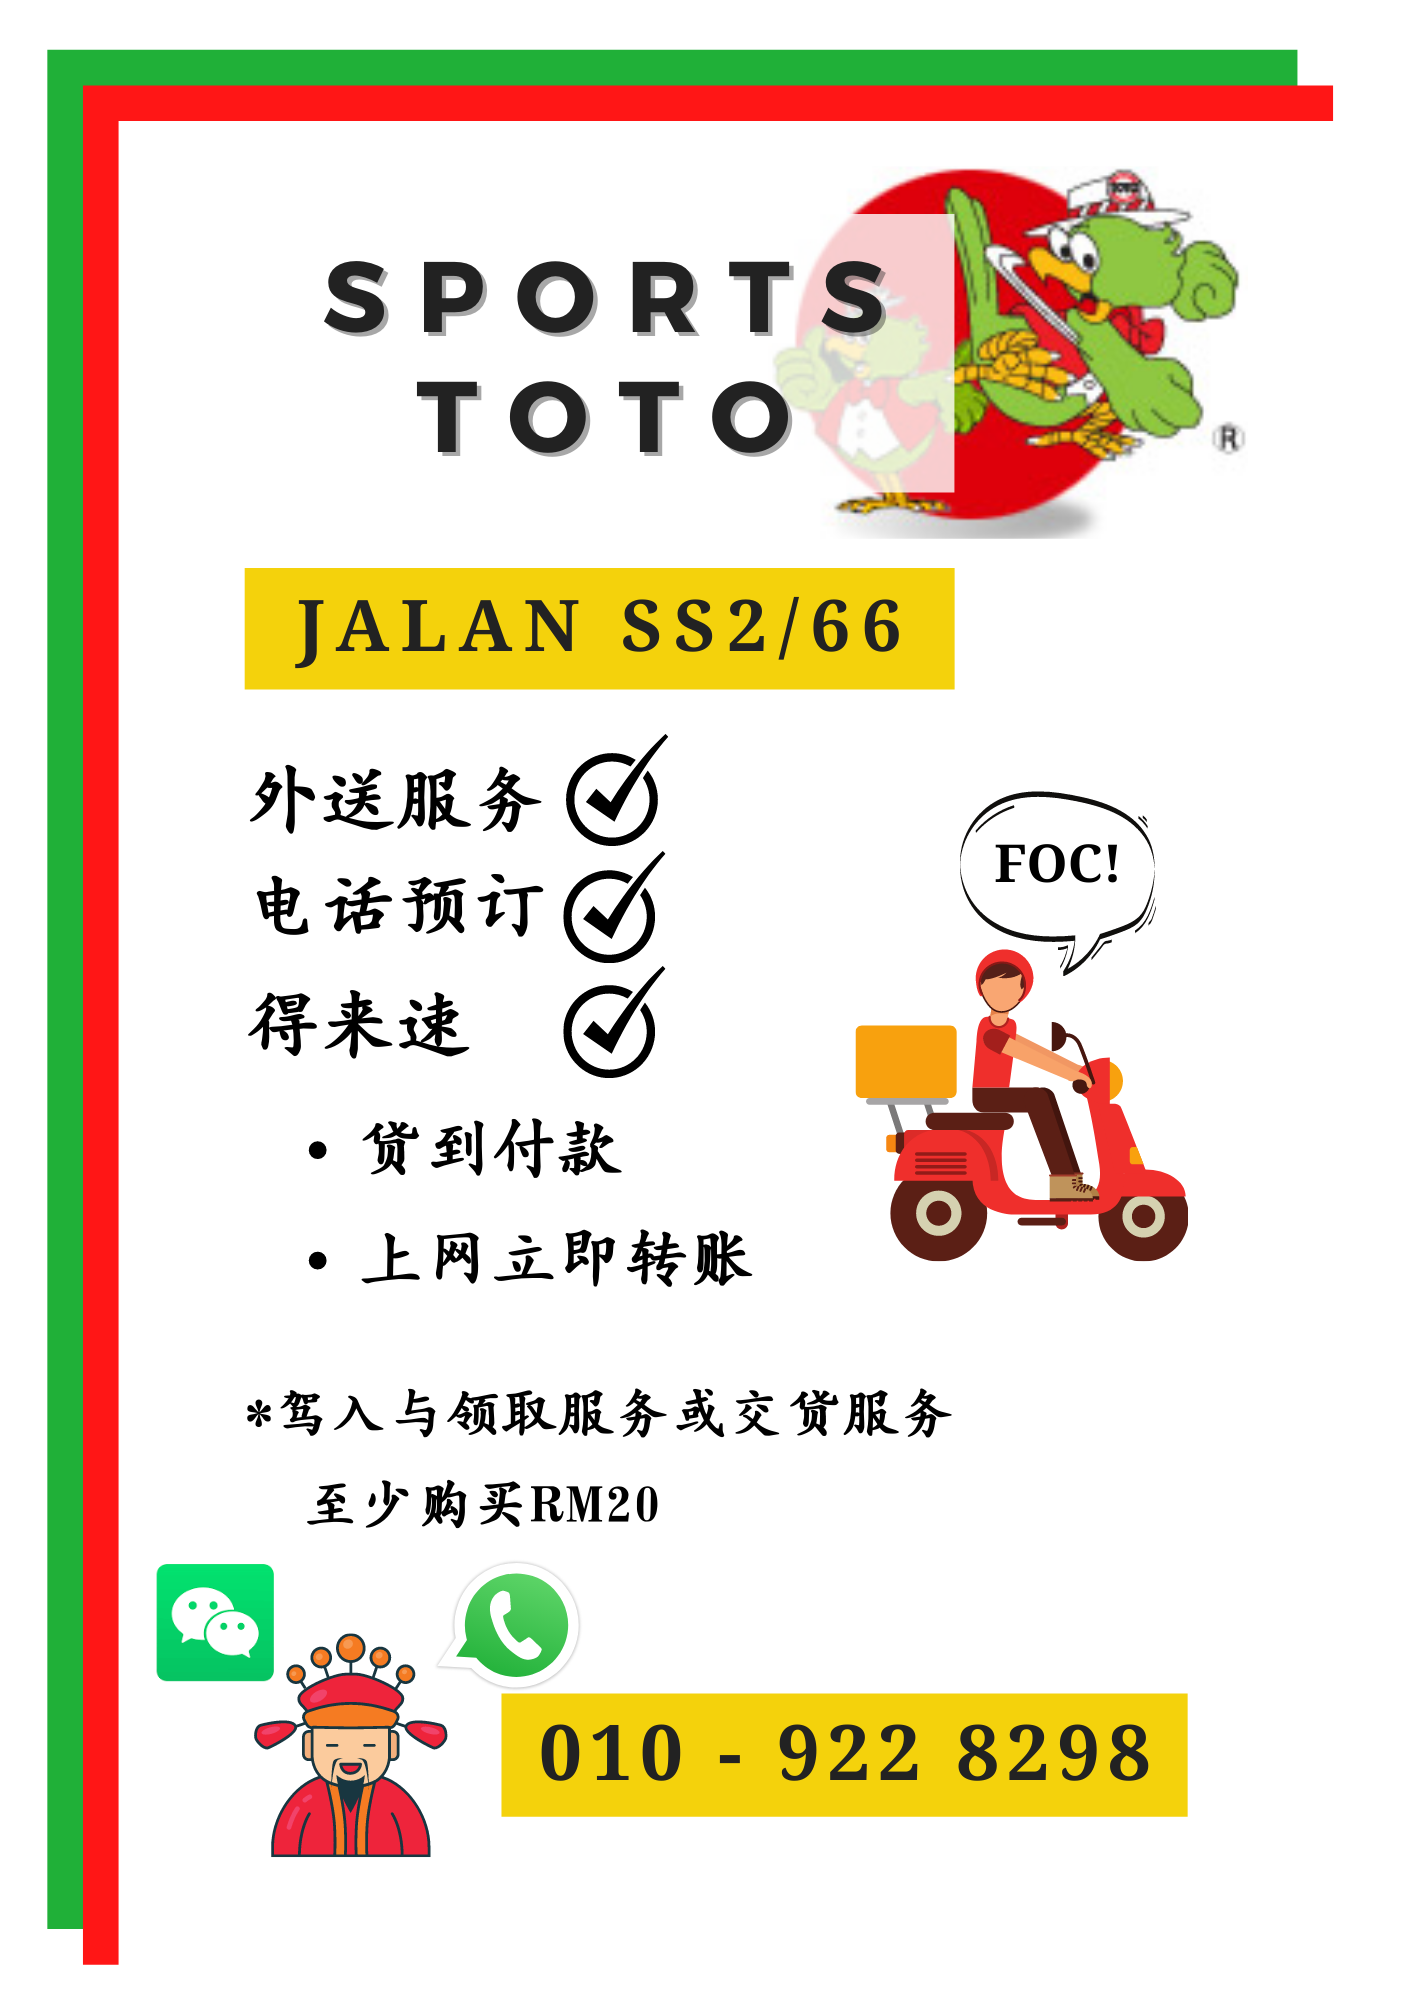 呆在家也能买字 Sports Toto 推出外送服务 免费把彩票送到你家 限定指定分行 Redchili21